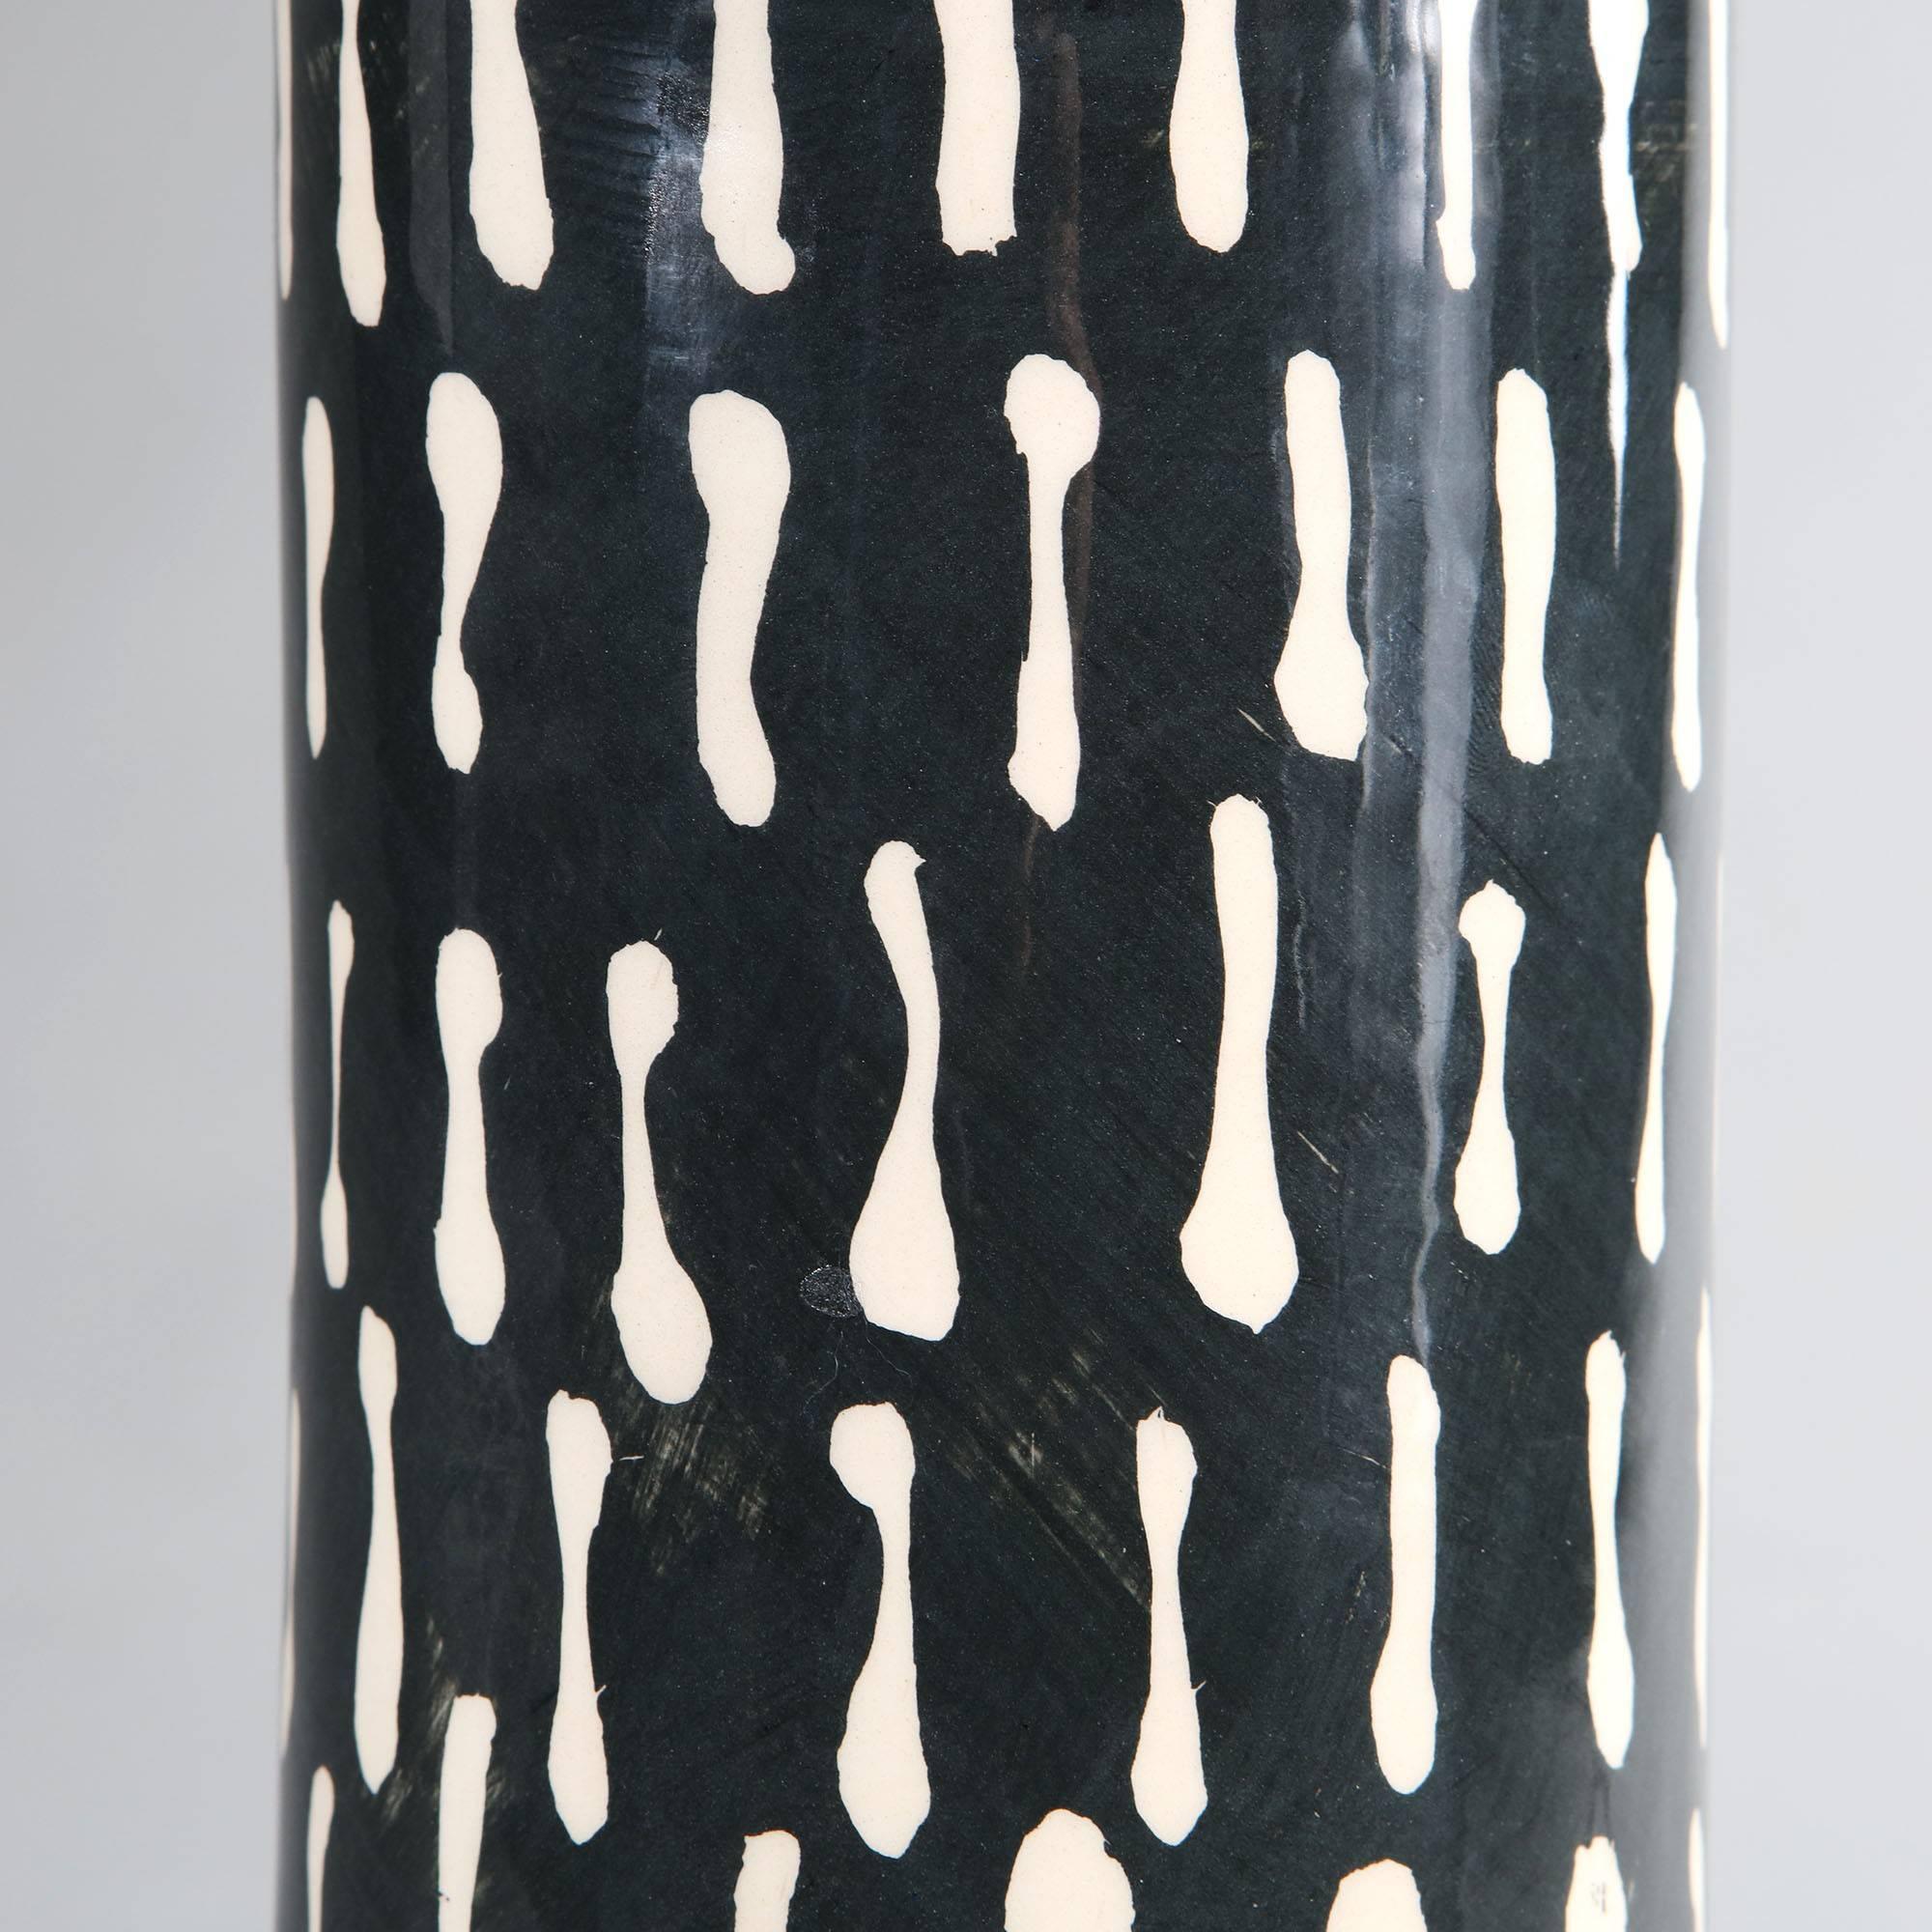 Une paire de vases en poterie d'atelier, maintenant convertis en lampes, avec une glaçure à motifs noirs et blancs et des bords orange contrastés.

Veuillez noter que les abat-jour ne sont pas inclus.

Actuellement câblé pour le Royaume-Uni.